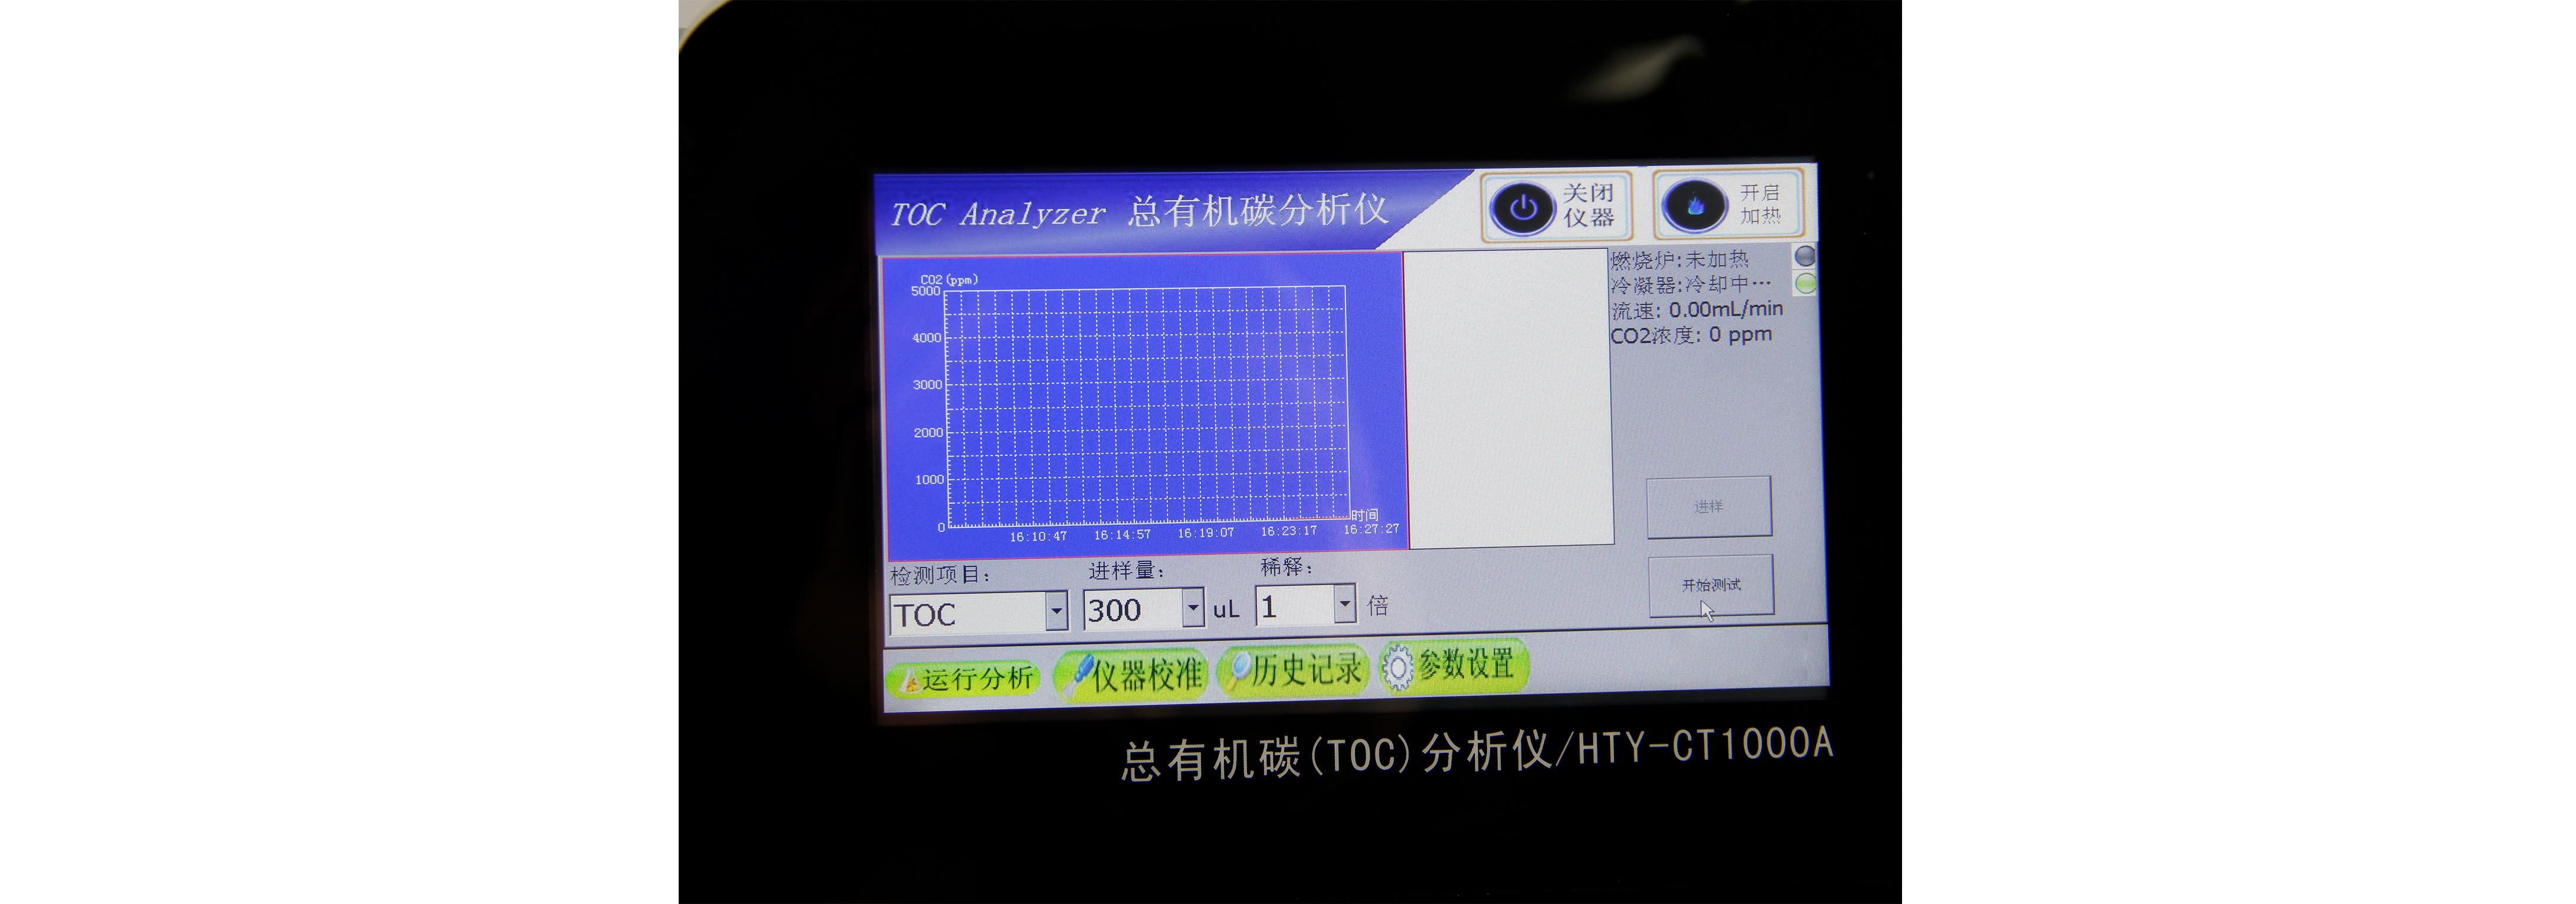 总有机碳分析仪TOC HTY-CT1000A